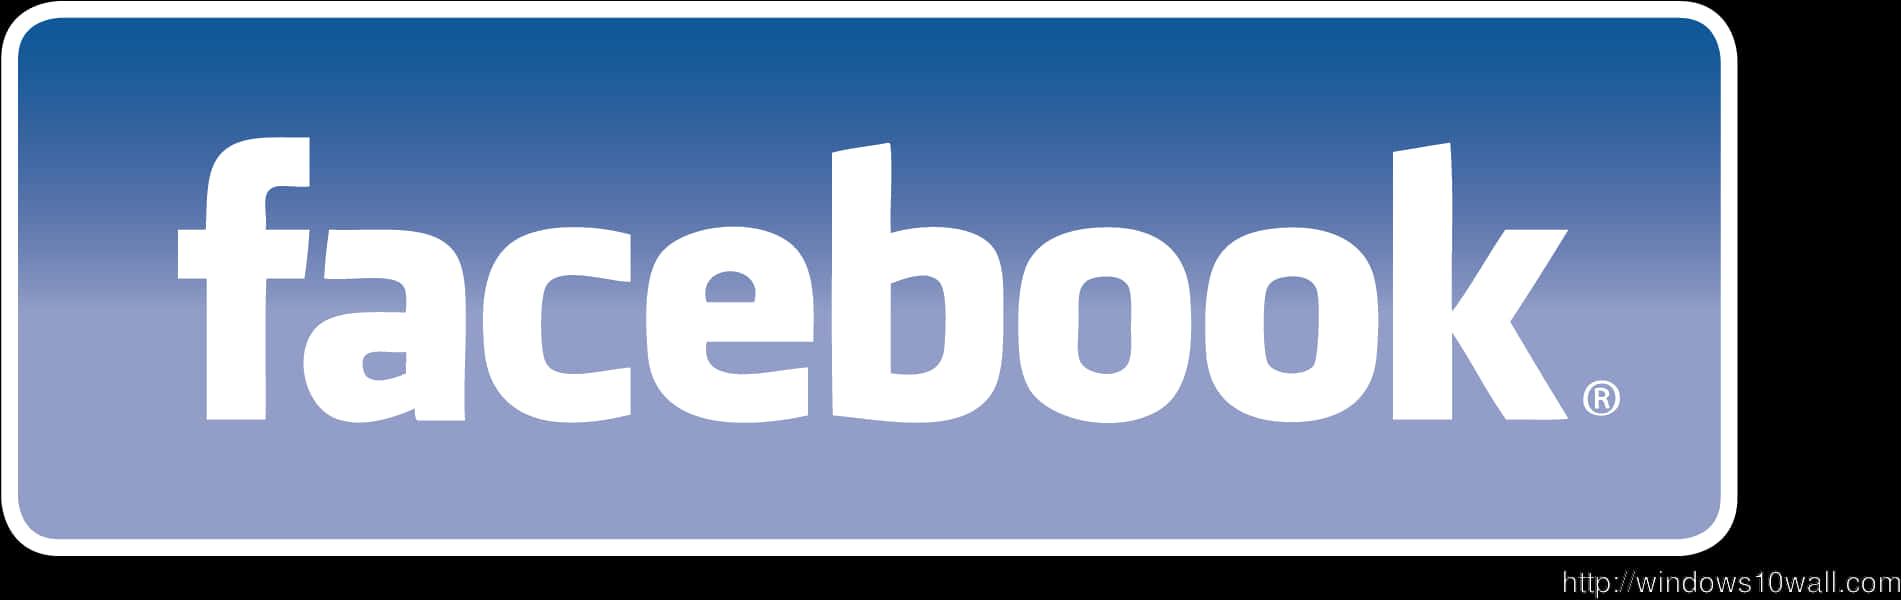 Facebook Logo Transparent Background